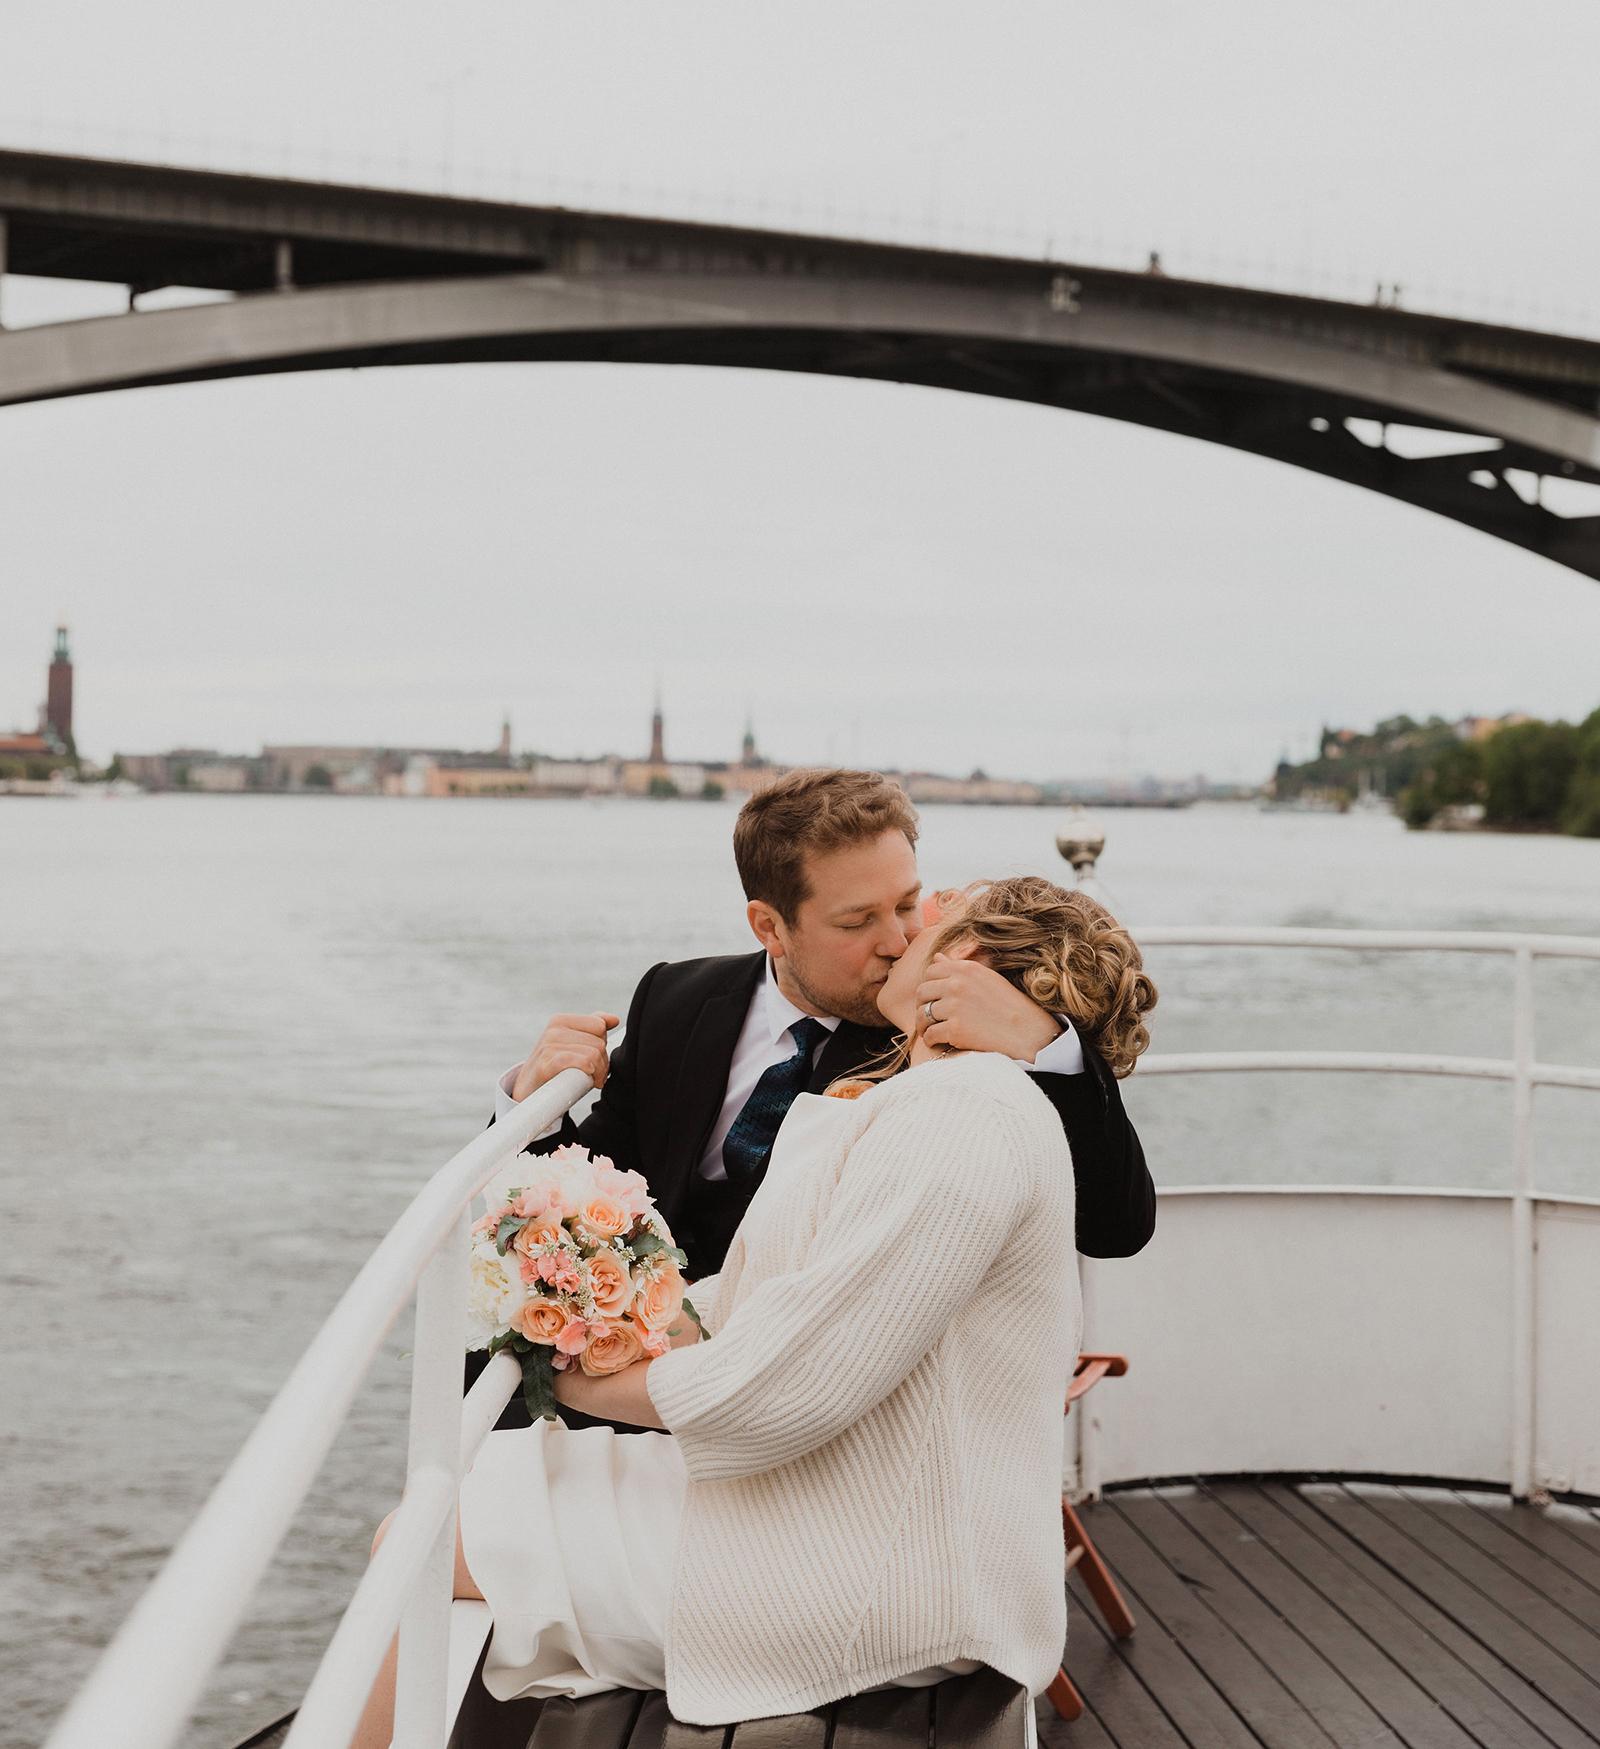 Efter vigseln i Stockholms stadshus (i bakgrunden) tog sid bröllopsparet en båttur på Riddarfjärden och under Västerbron.